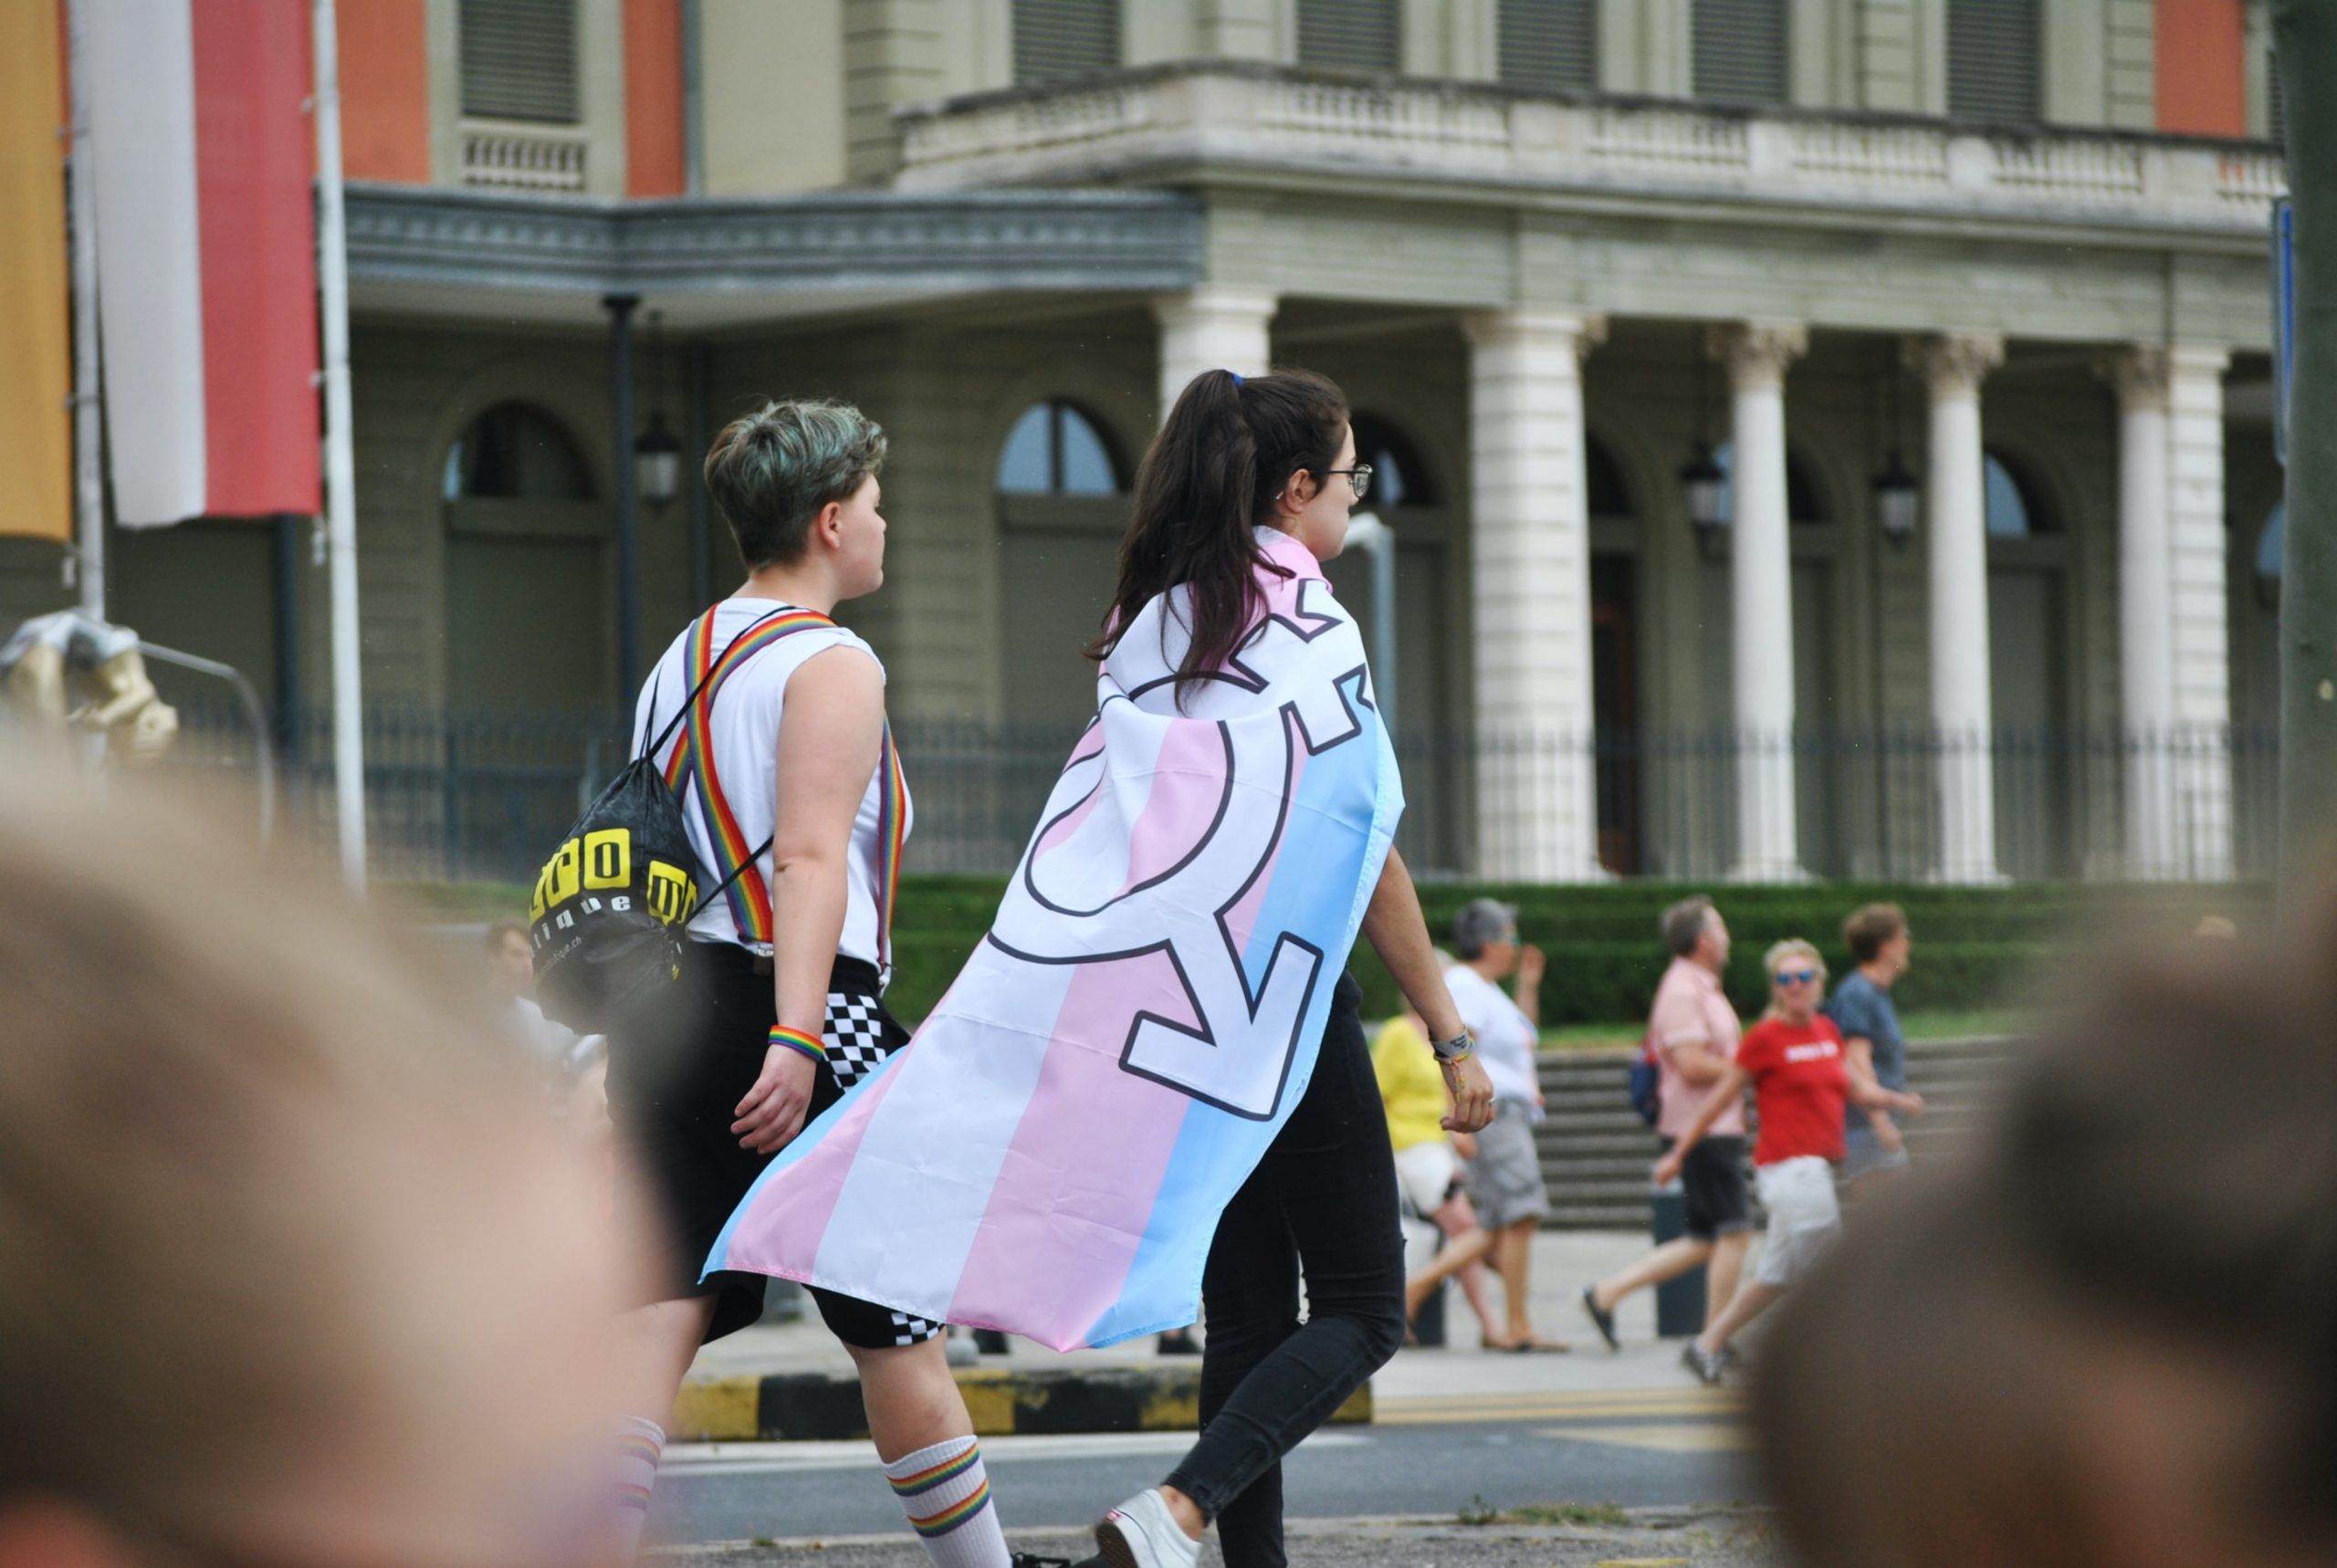 Reportagem. Ser pessoa trans não binária em Portugal